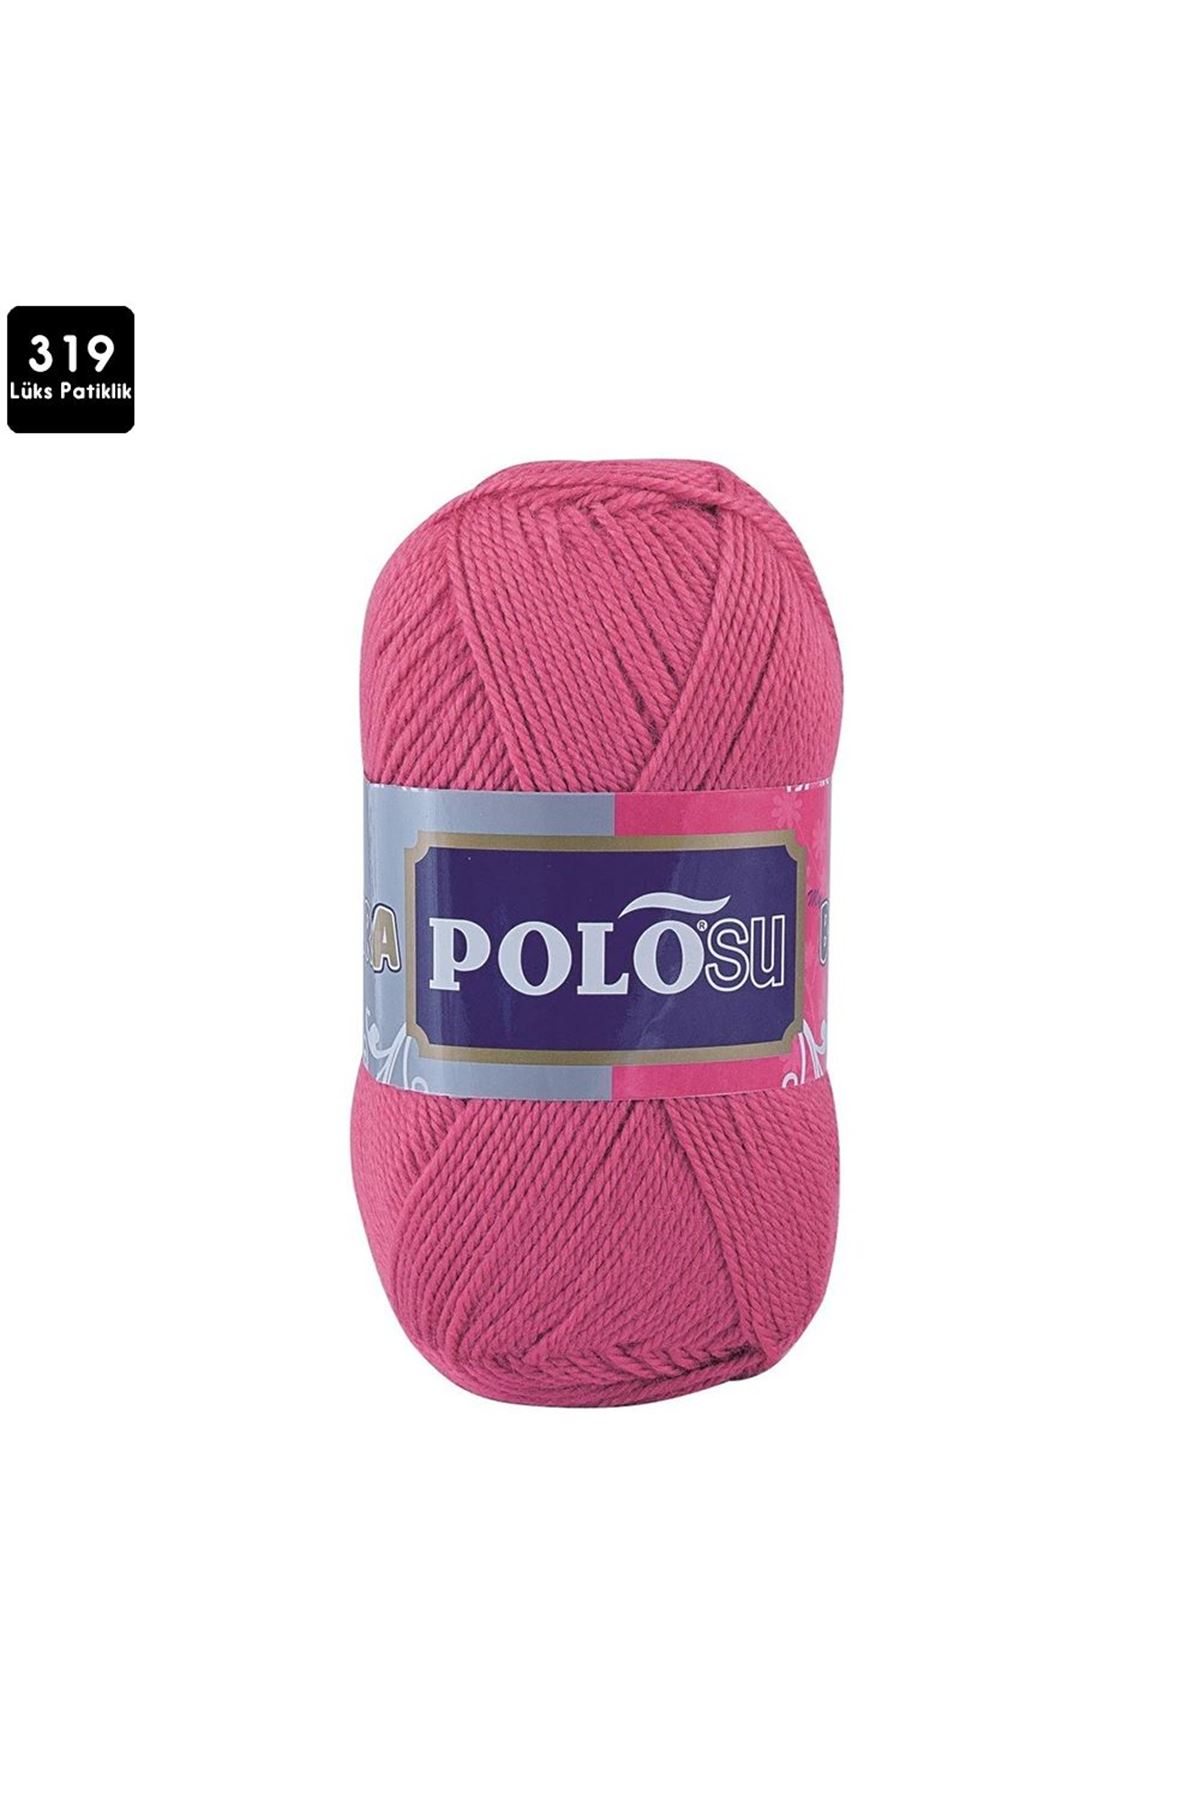 PoloSU Lüks Patiklik Renk No:319